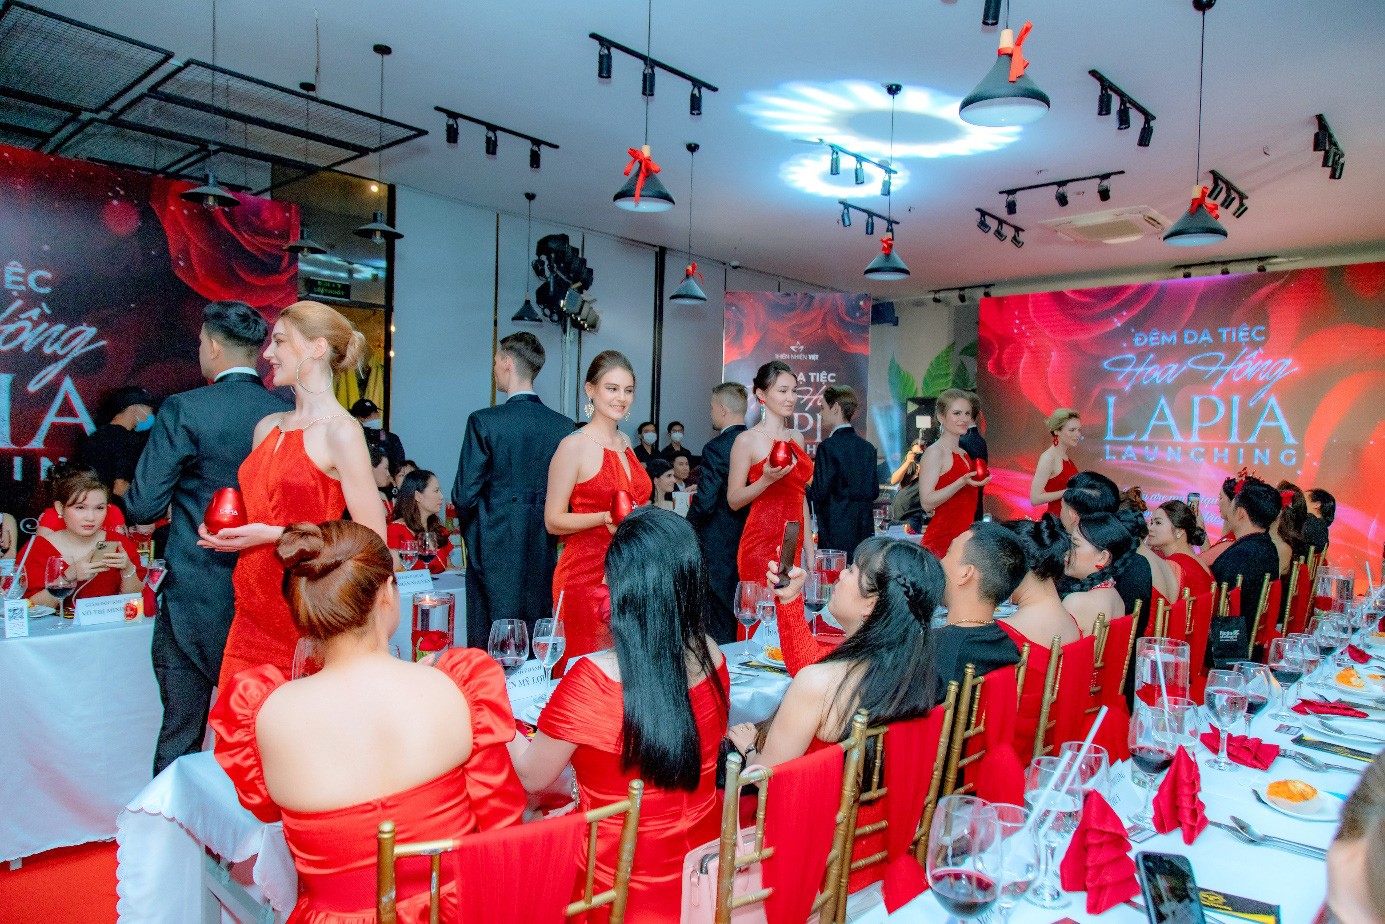 Những khoảnh khắc tại sự kiện ra mắt sản phẩm Lapia Rose Whitening Skin của Thiên Nhiên Việt - Ảnh 2.